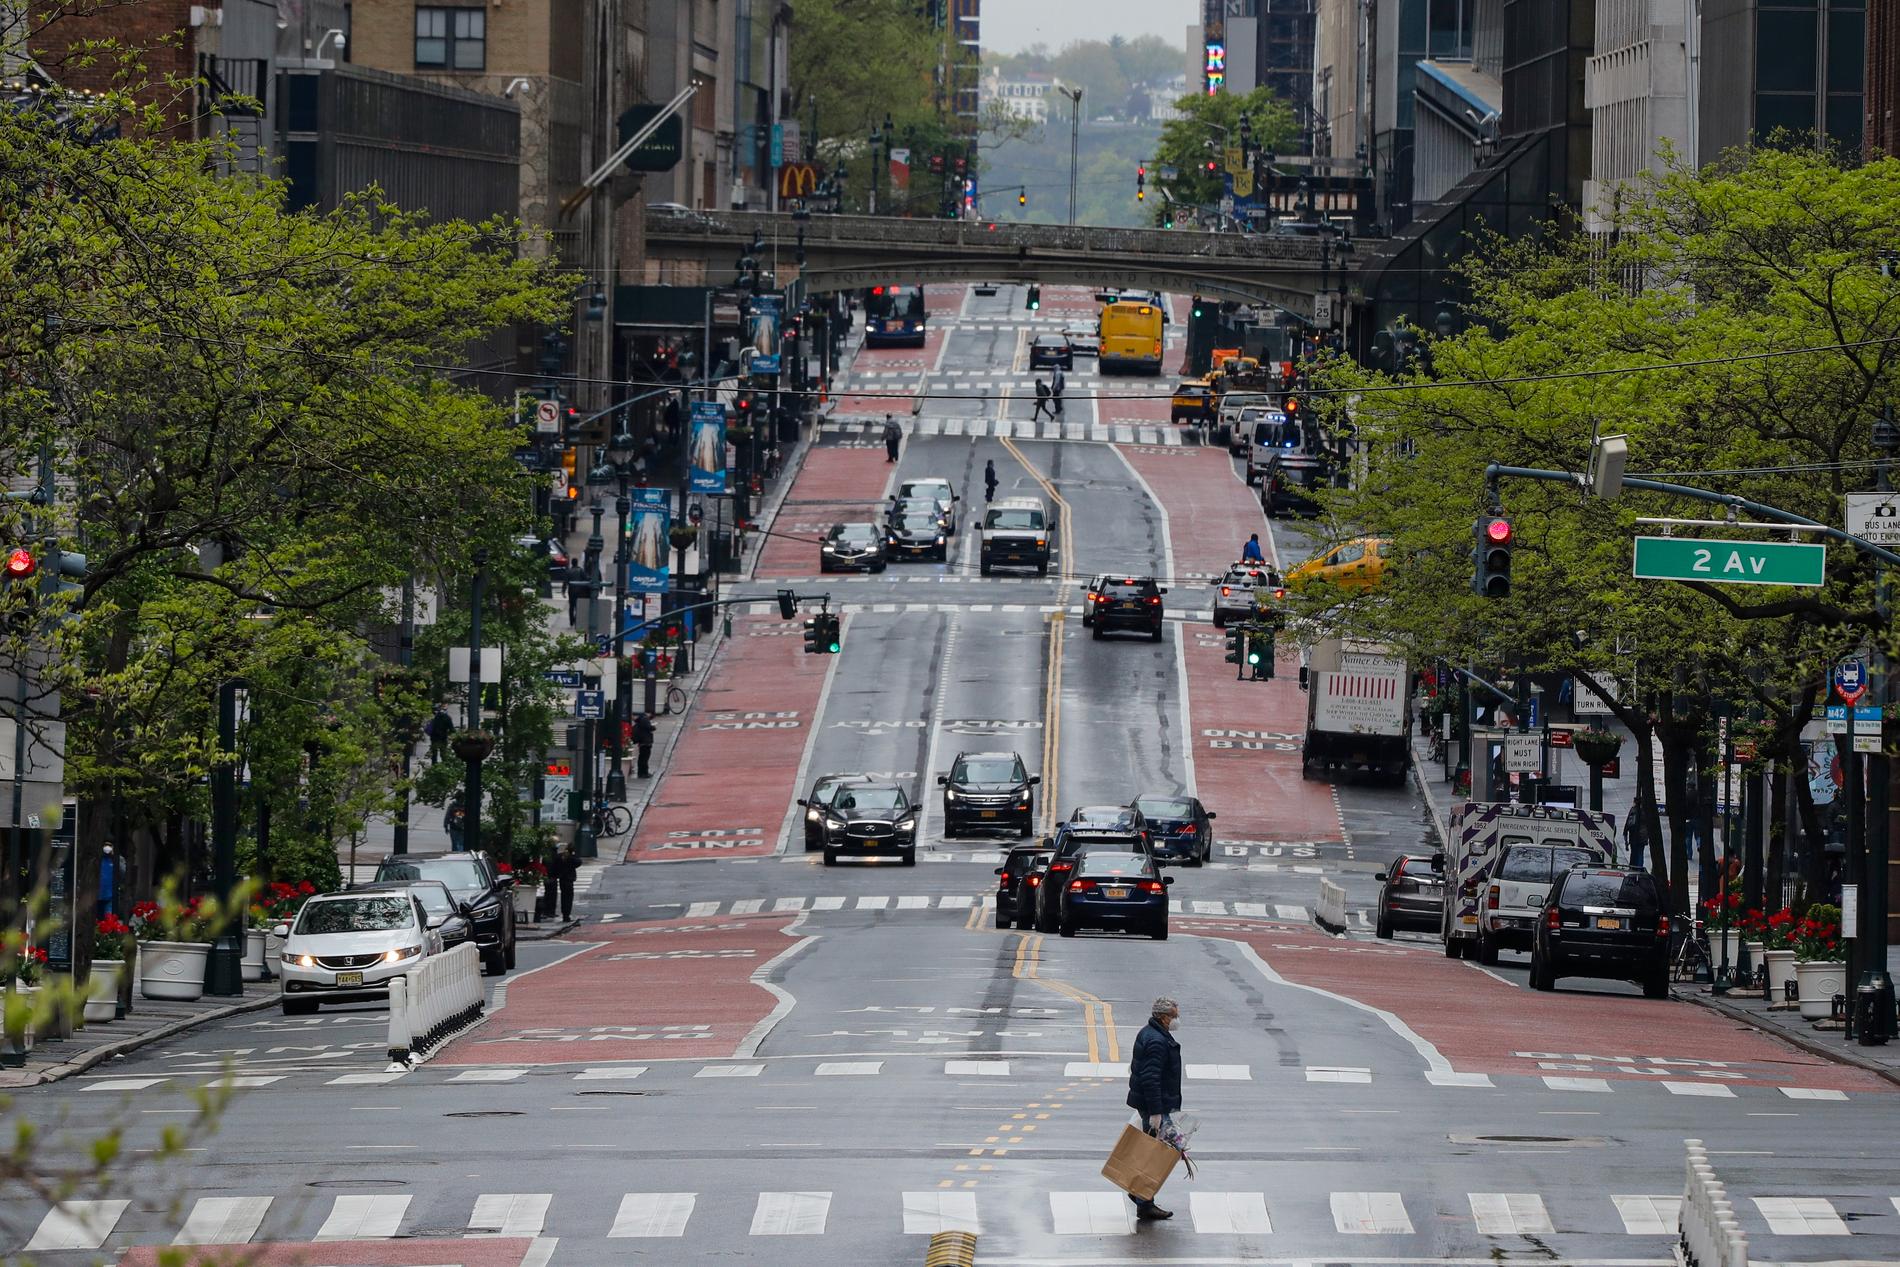 Gatorna ekar närapå tomma i den hårt coronadrabbade staden New York. Här en bild från 42:a gatan i fredags.